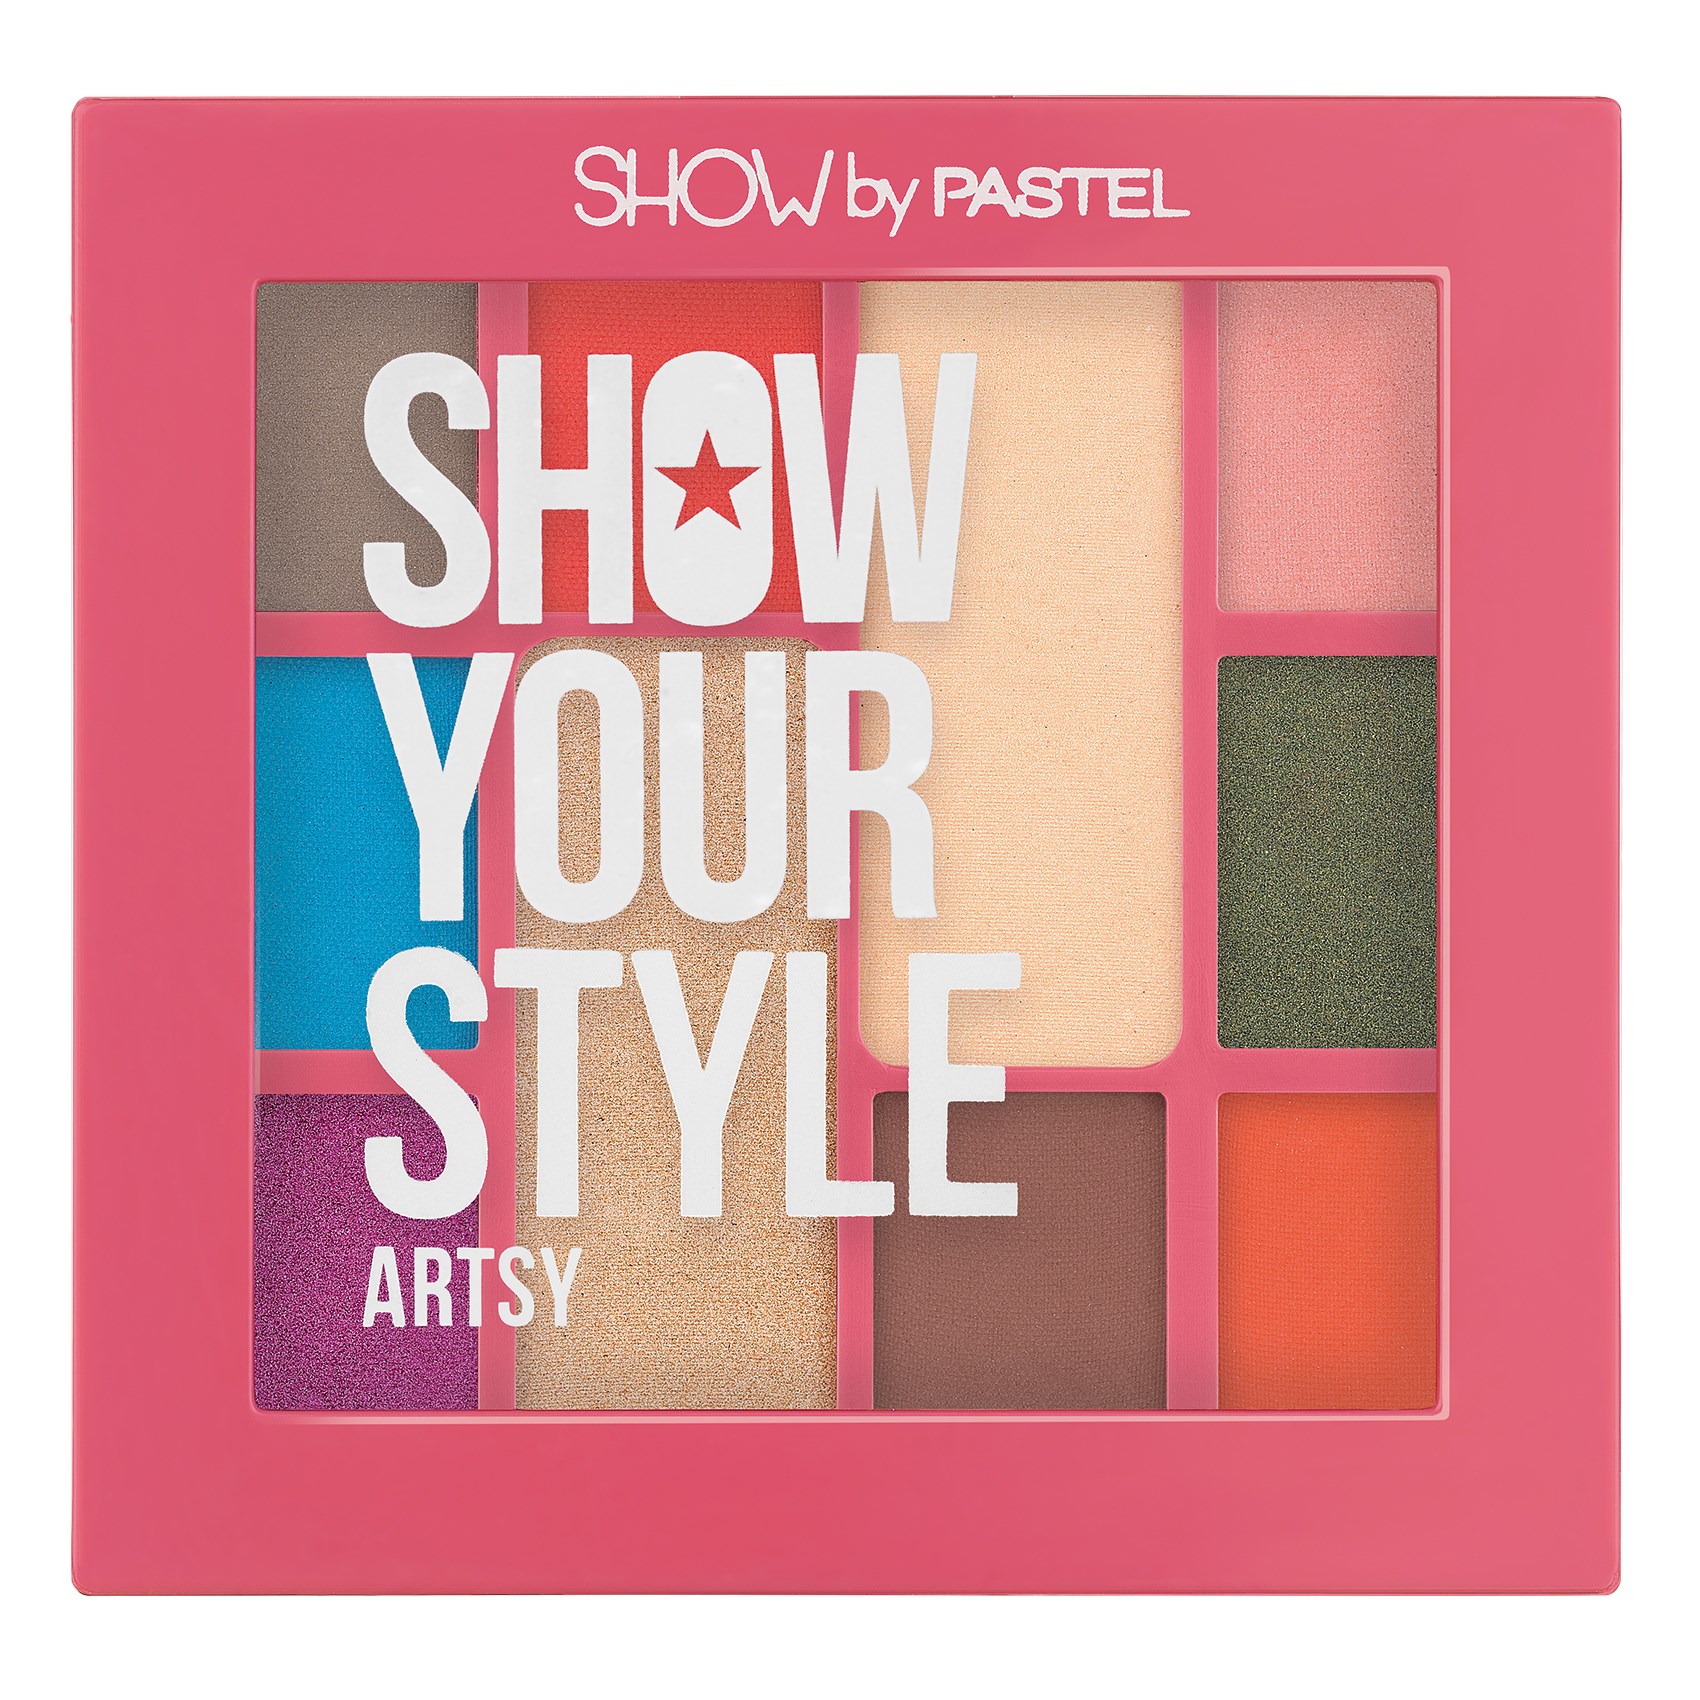 Палетка теней для век PASTEL Show Your Style, 462 Artsy pastel палетка теней для век show your style